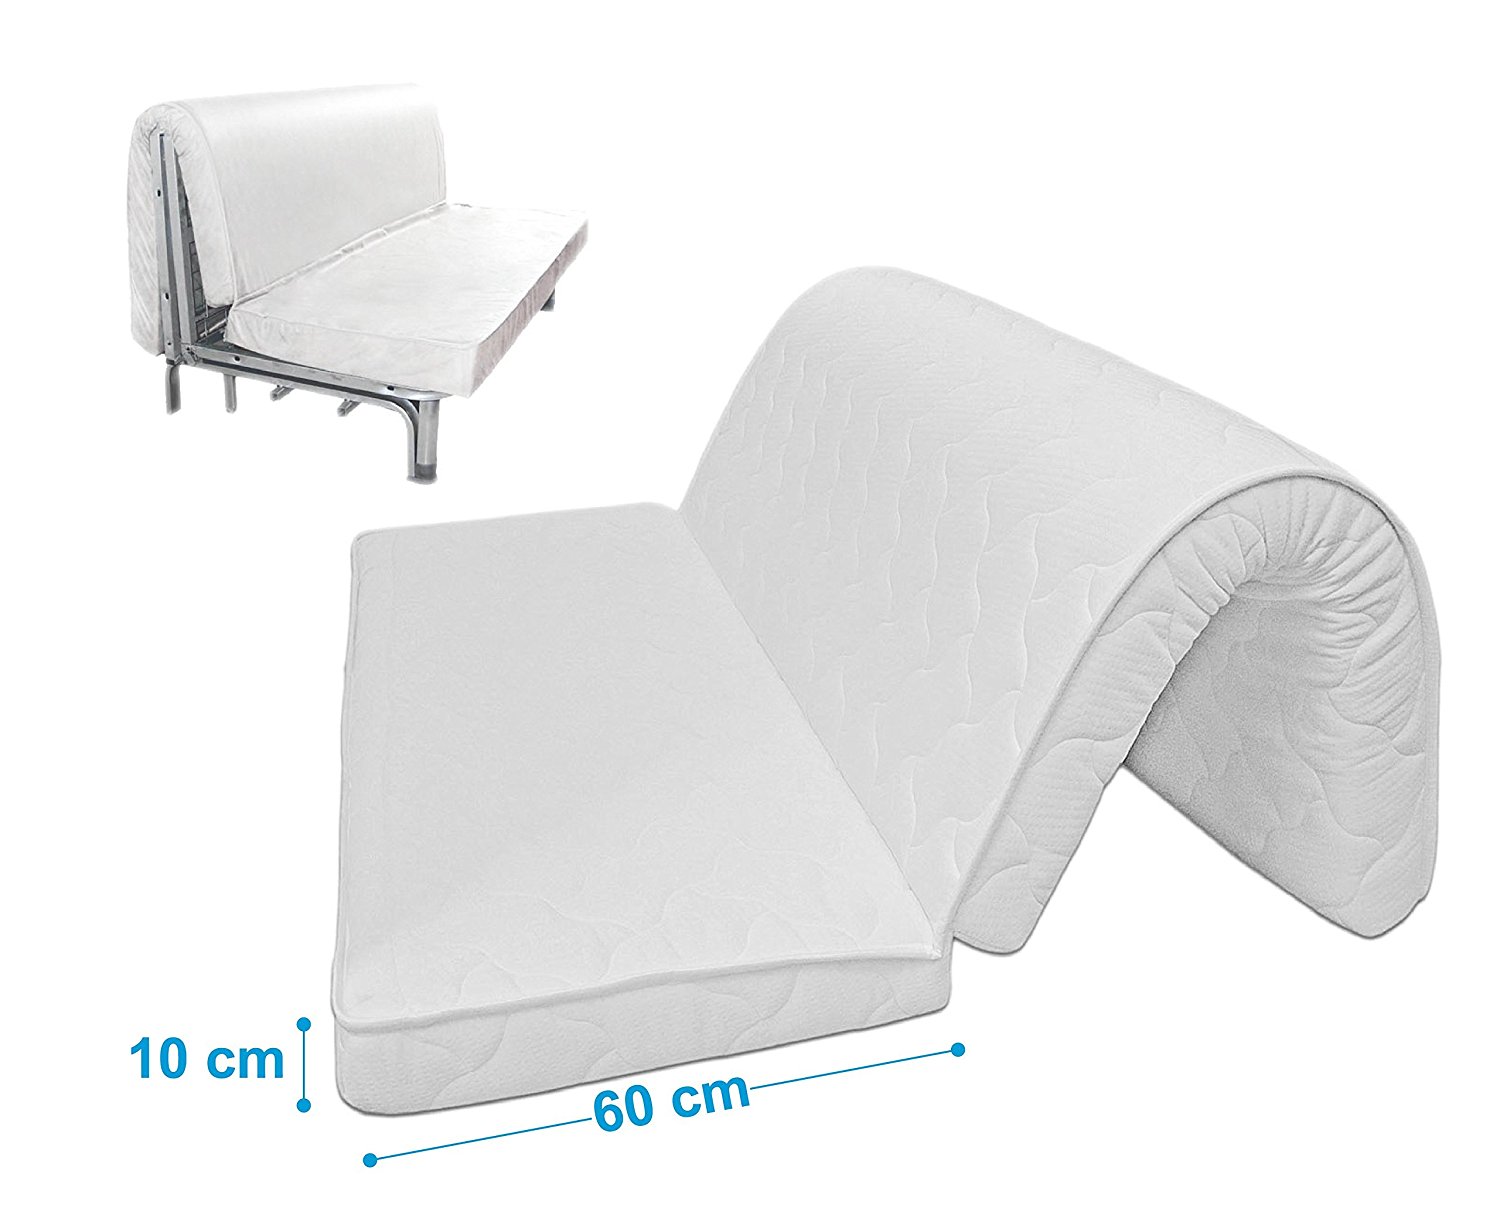 Materassi pieghevoli per divano letto for Materasso per divano letto matrimoniale pieghevole